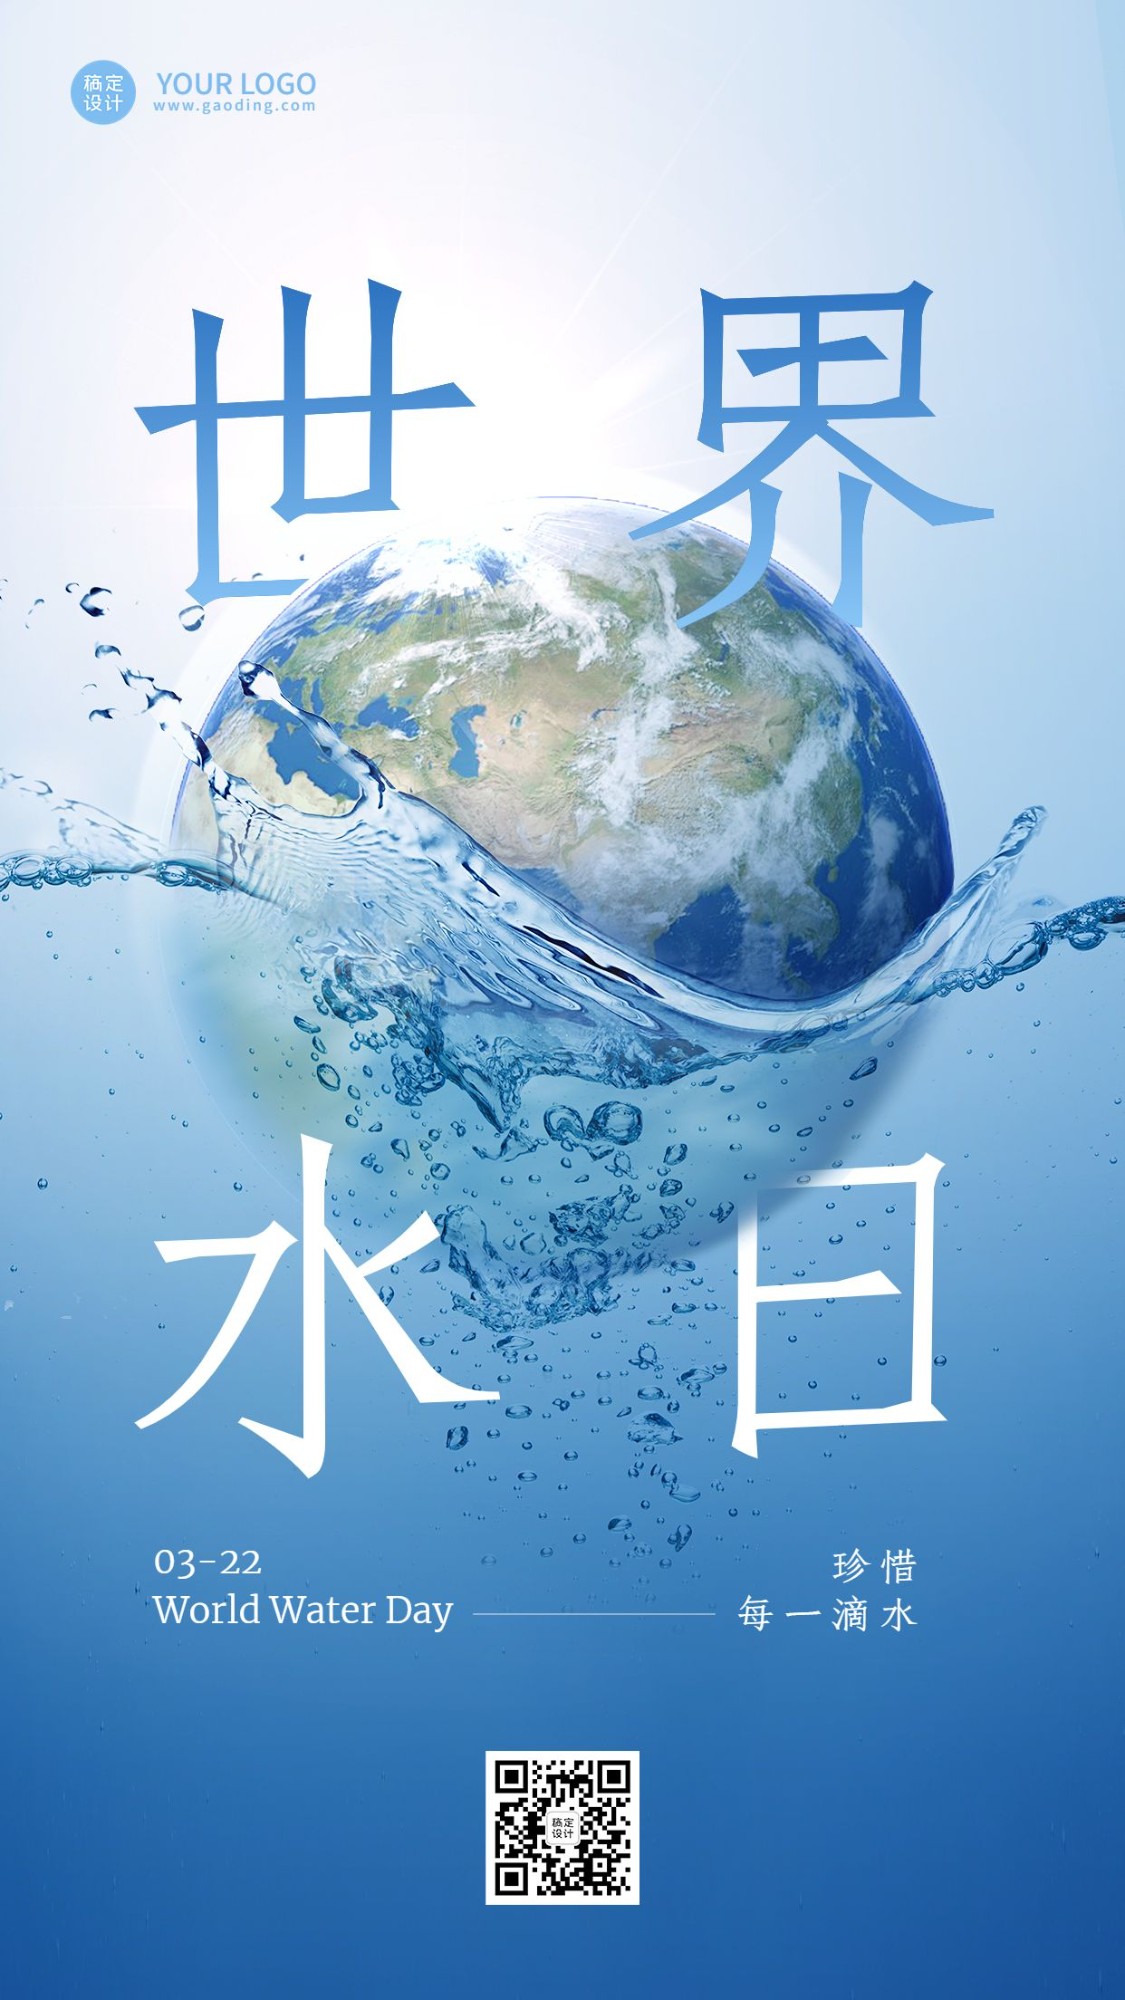 世界水日节日宣传手机海报预览效果